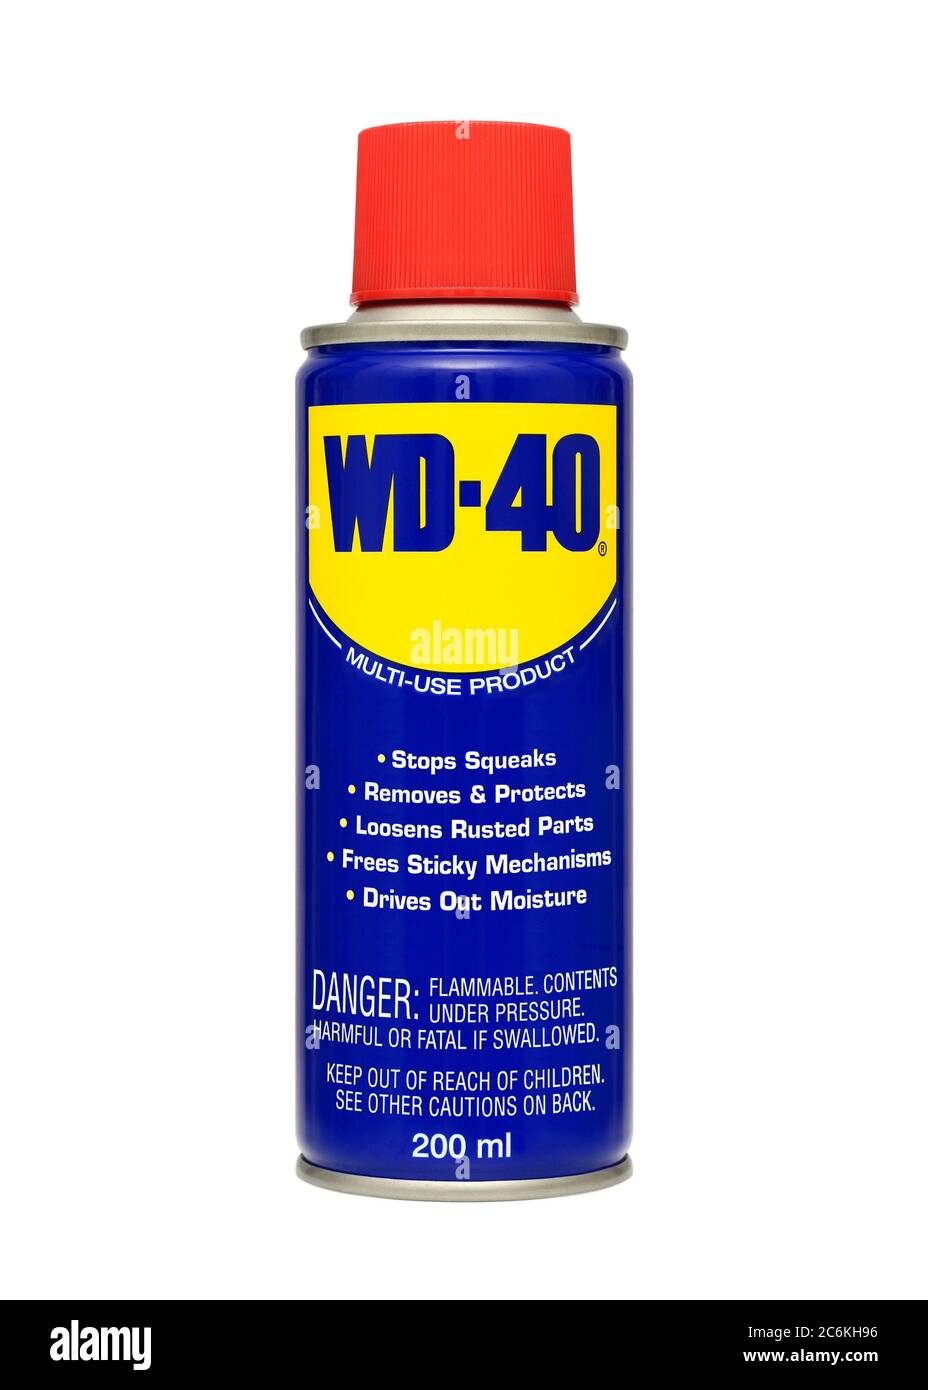 WD-40 lubrifiant dans un aérosol contre un fond blanc Banque D'Images